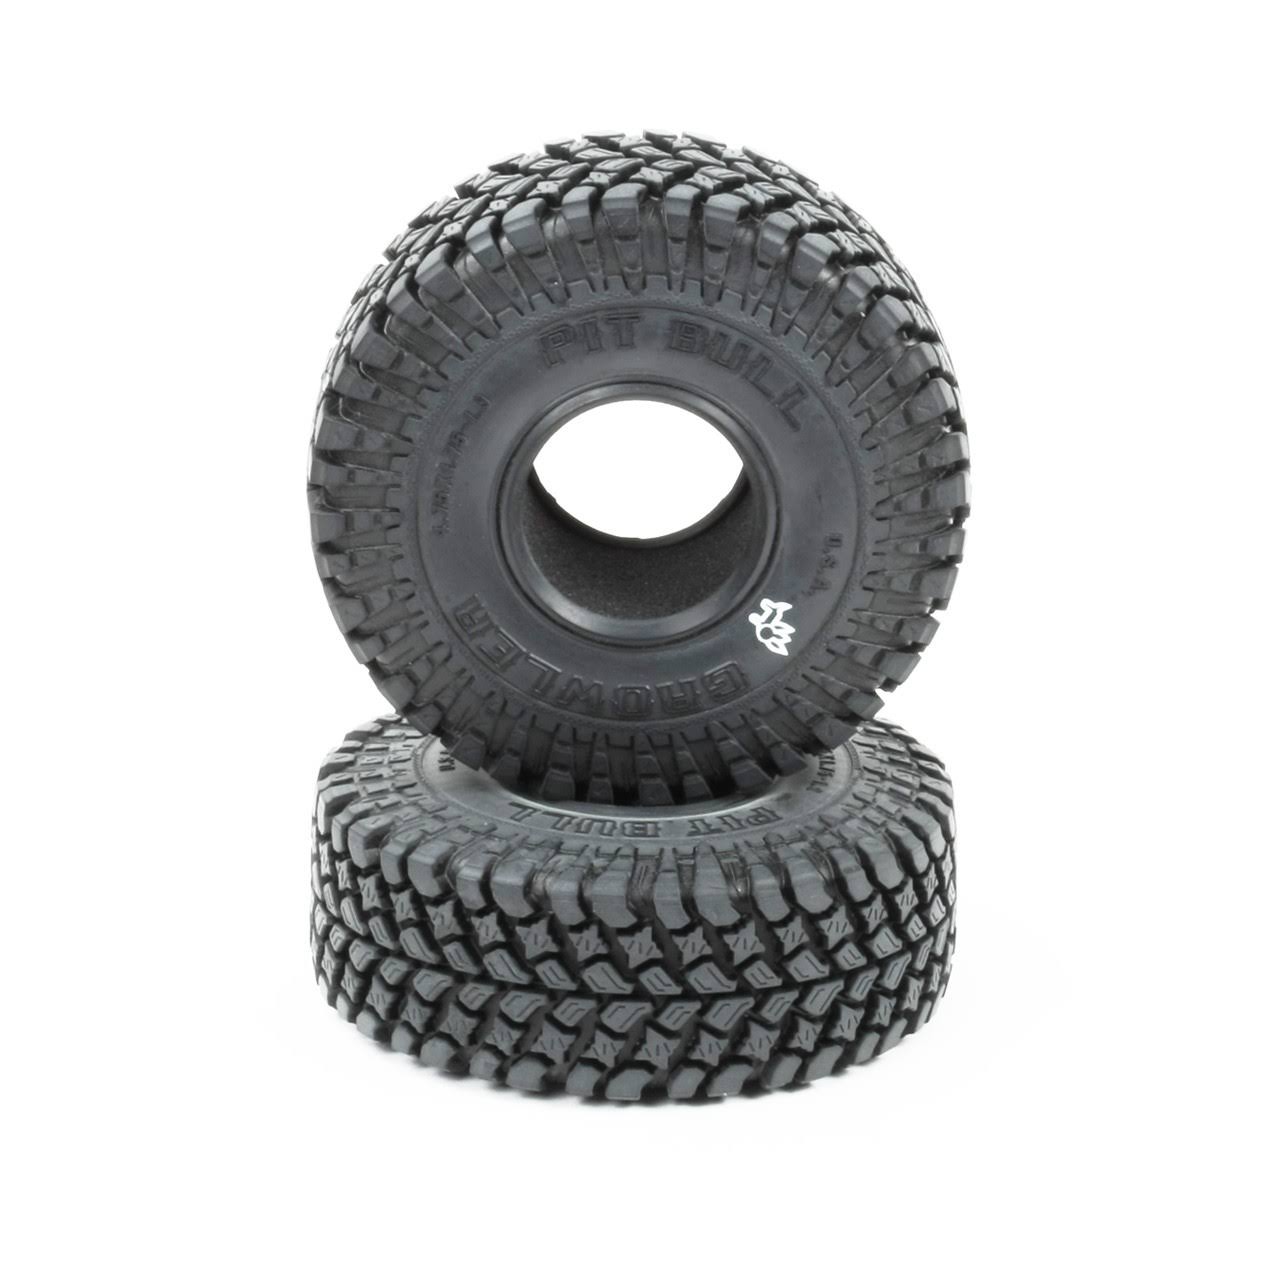 Pit Bull Pb9006Ak Growler 1.9" Scale Tires, Alien Kompound, with Foam